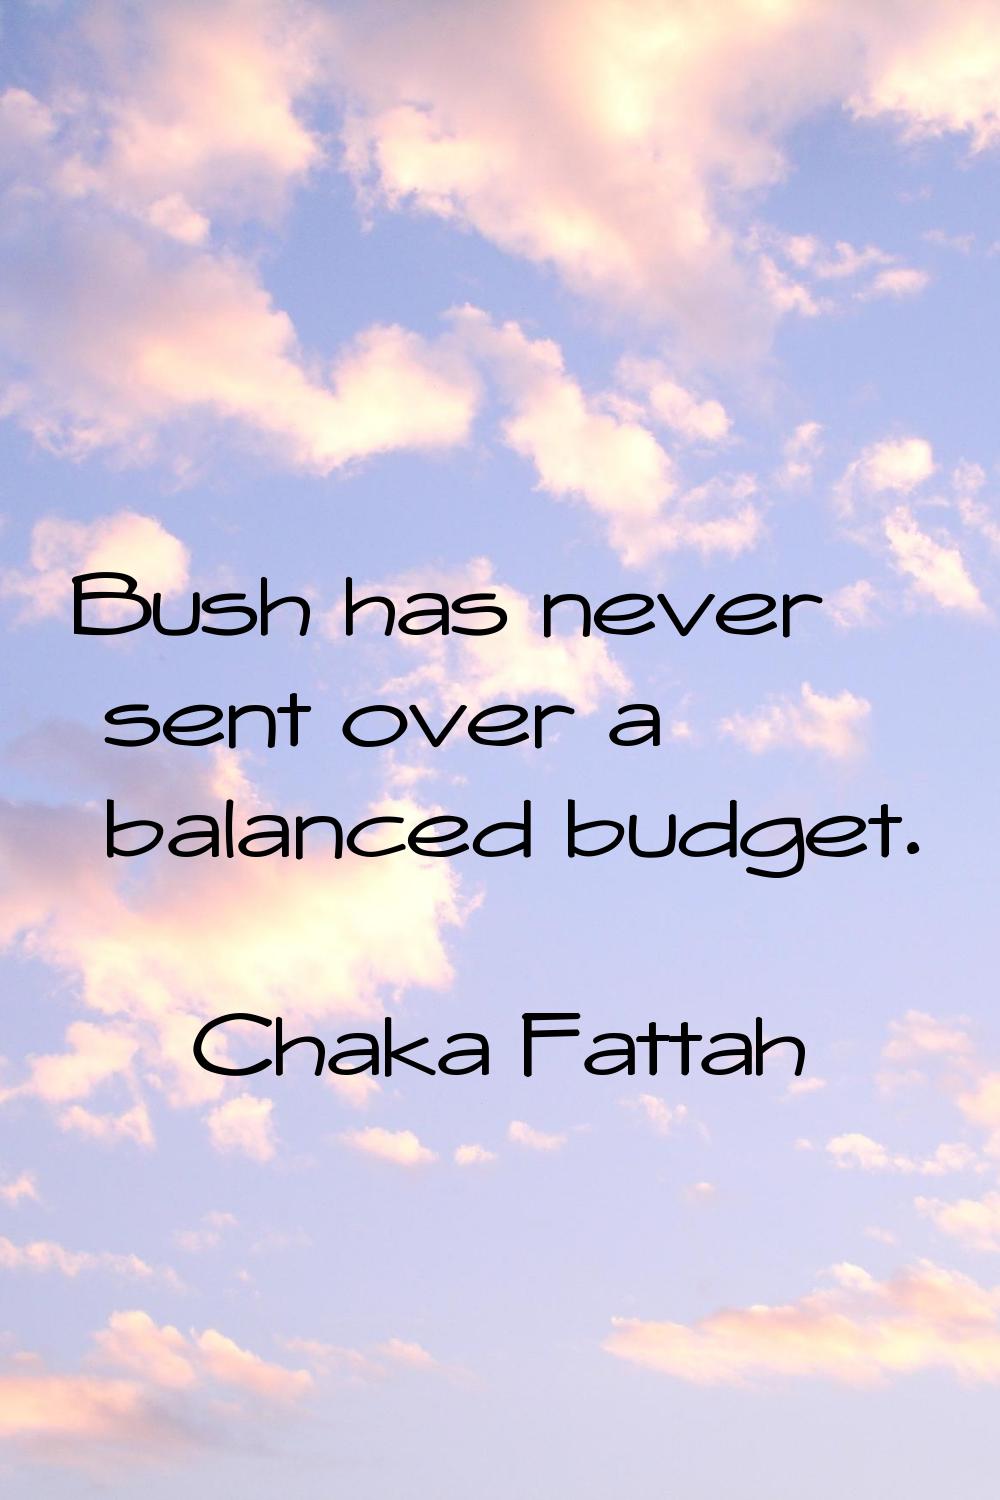 Bush has never sent over a balanced budget.